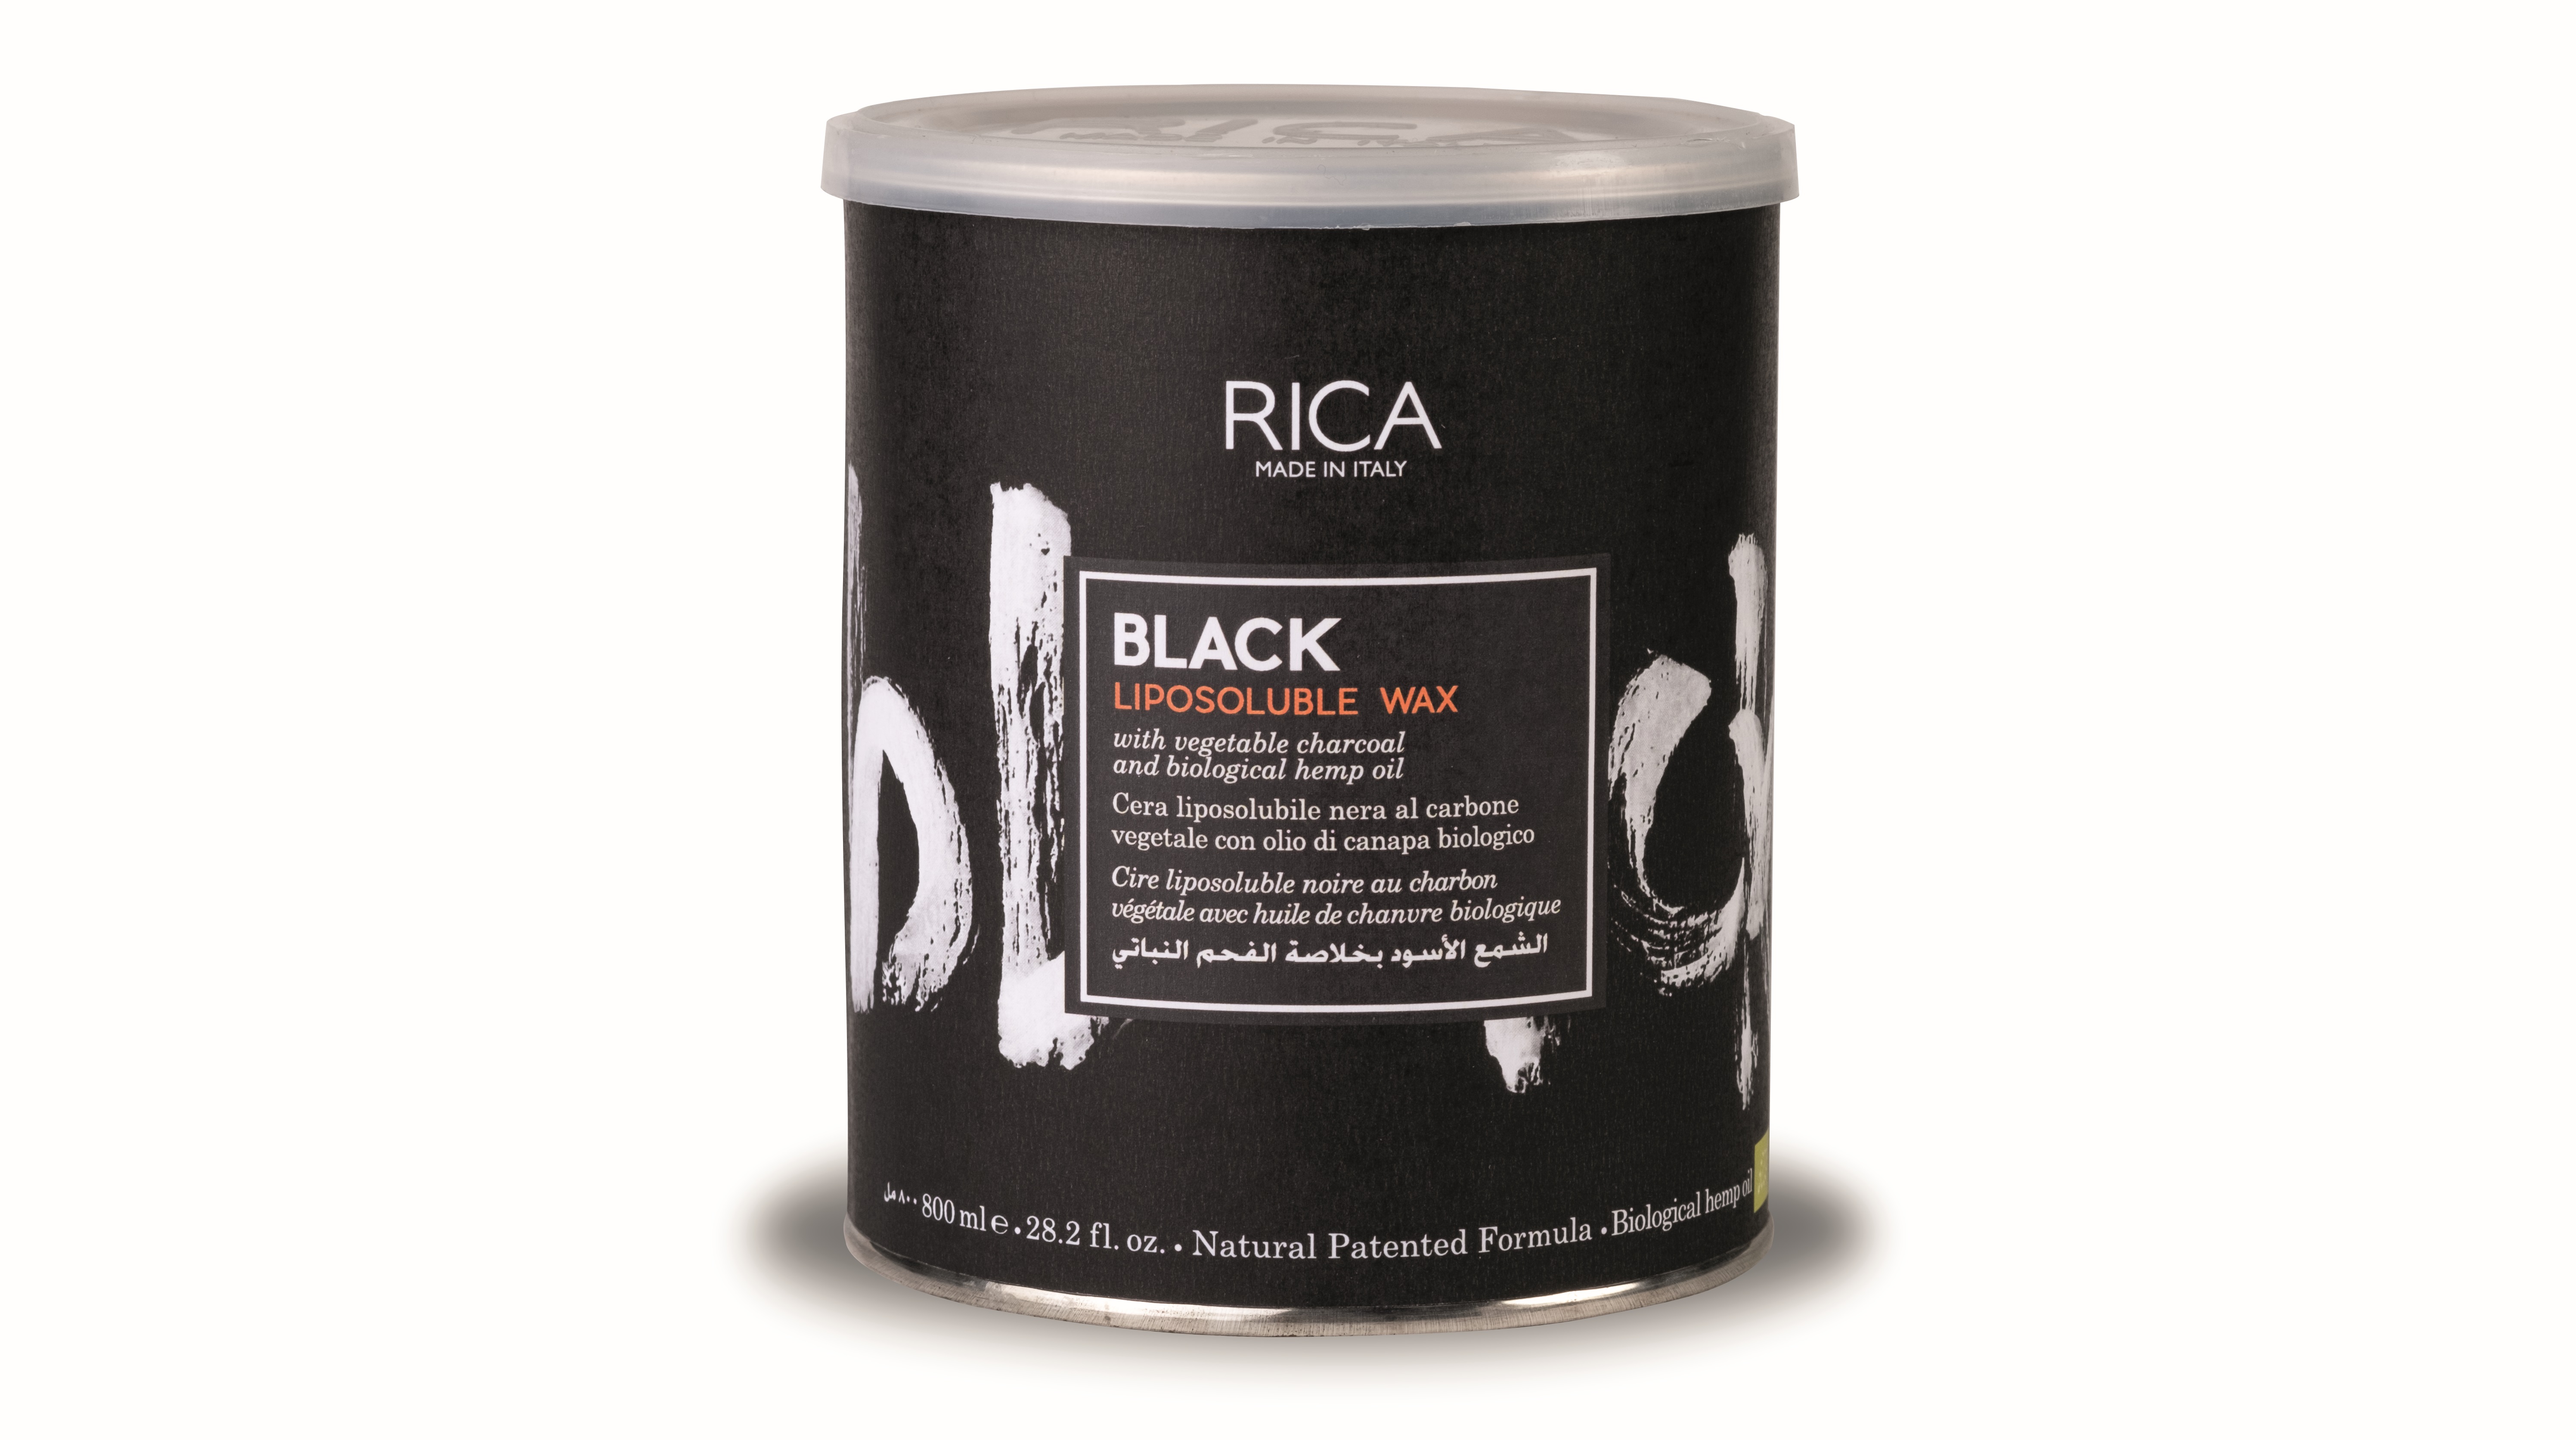 Rica Black Liposoluble Wax